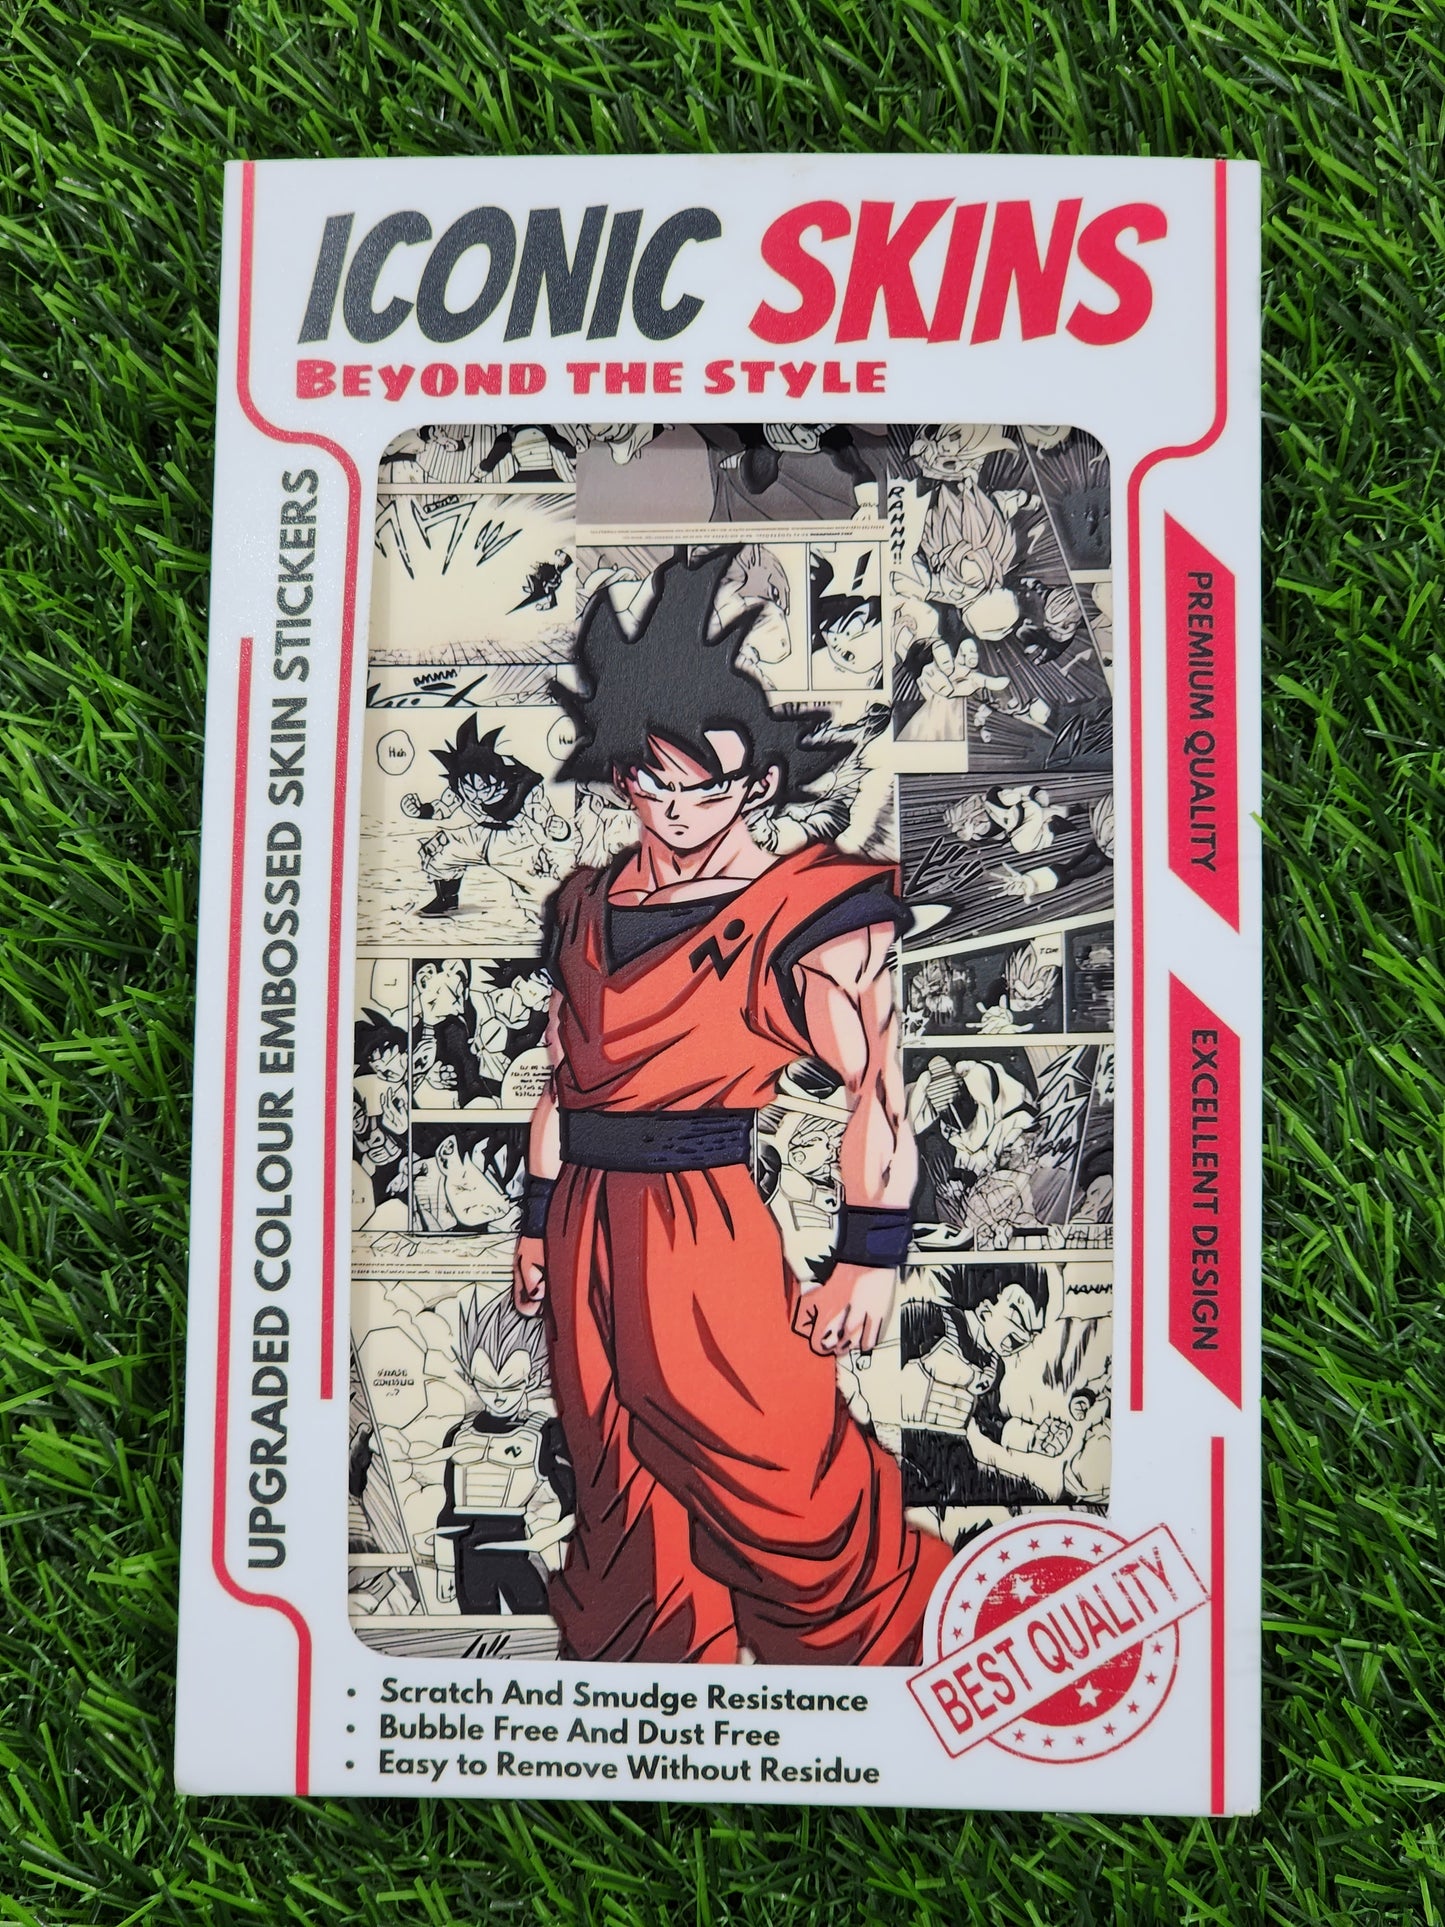 Dragon Ball-Z Goku Mobile Skin